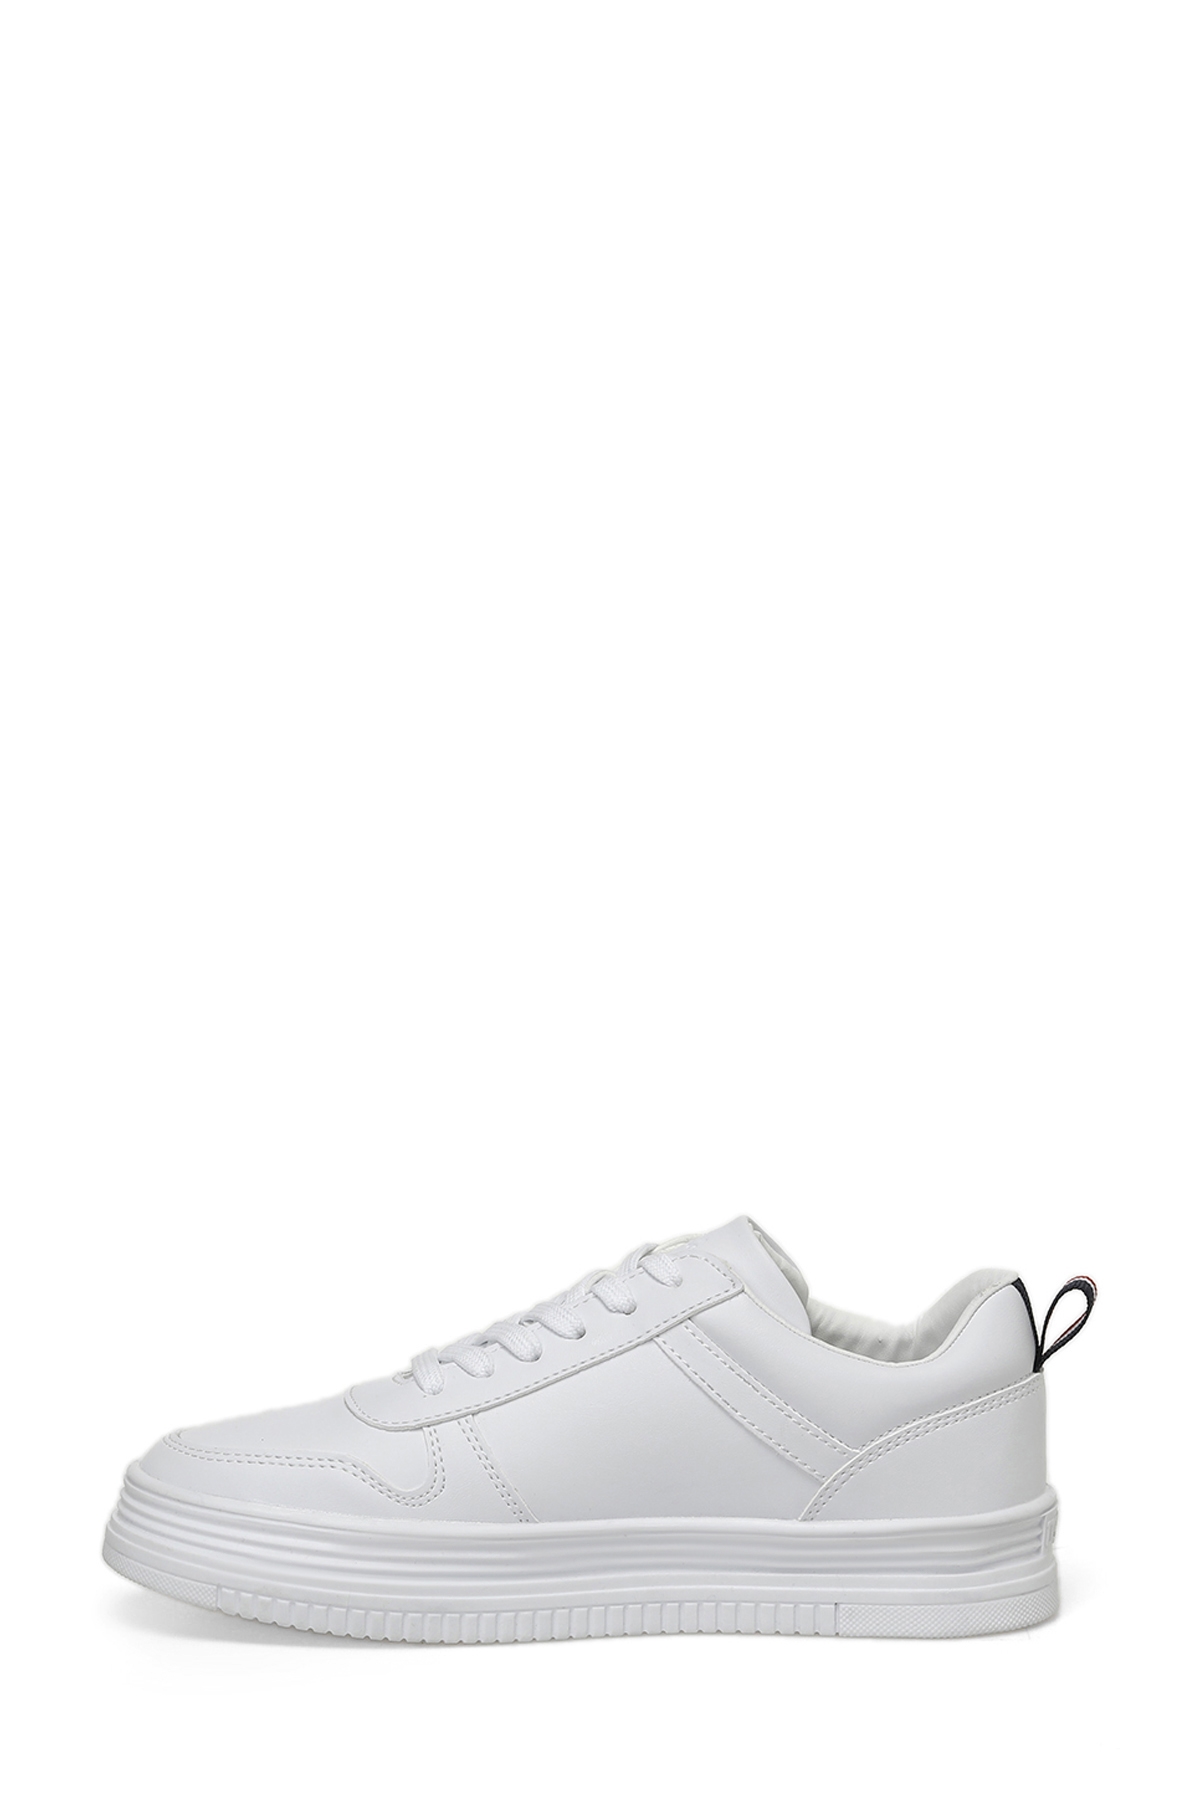 U.S. Polo Assn. SURI 3PR WHITE Woman Sport Shoes 101416461 | Flo